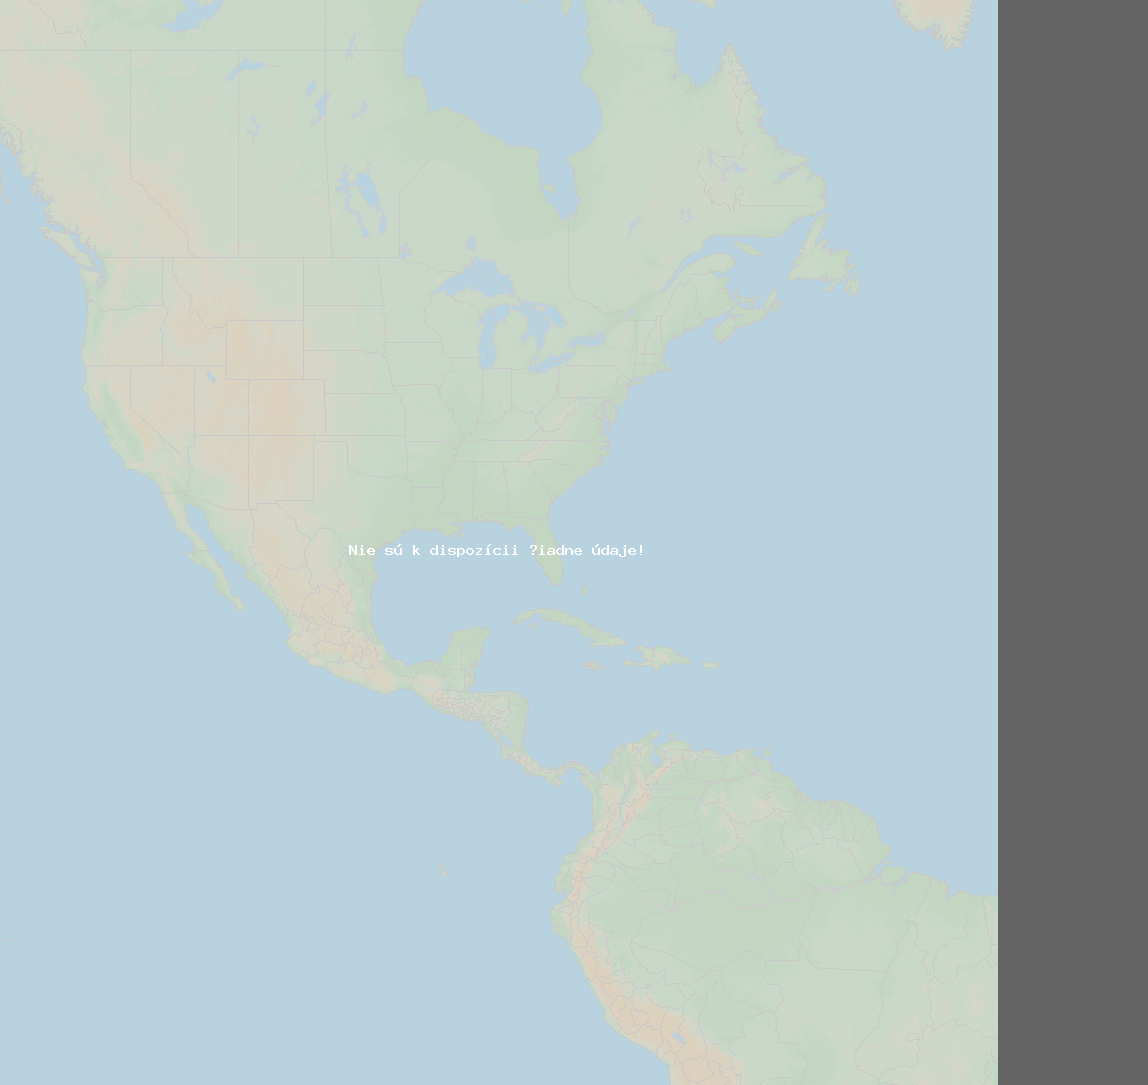 Pomer bleskov (Stanica Cuernavaca) North America 2024 